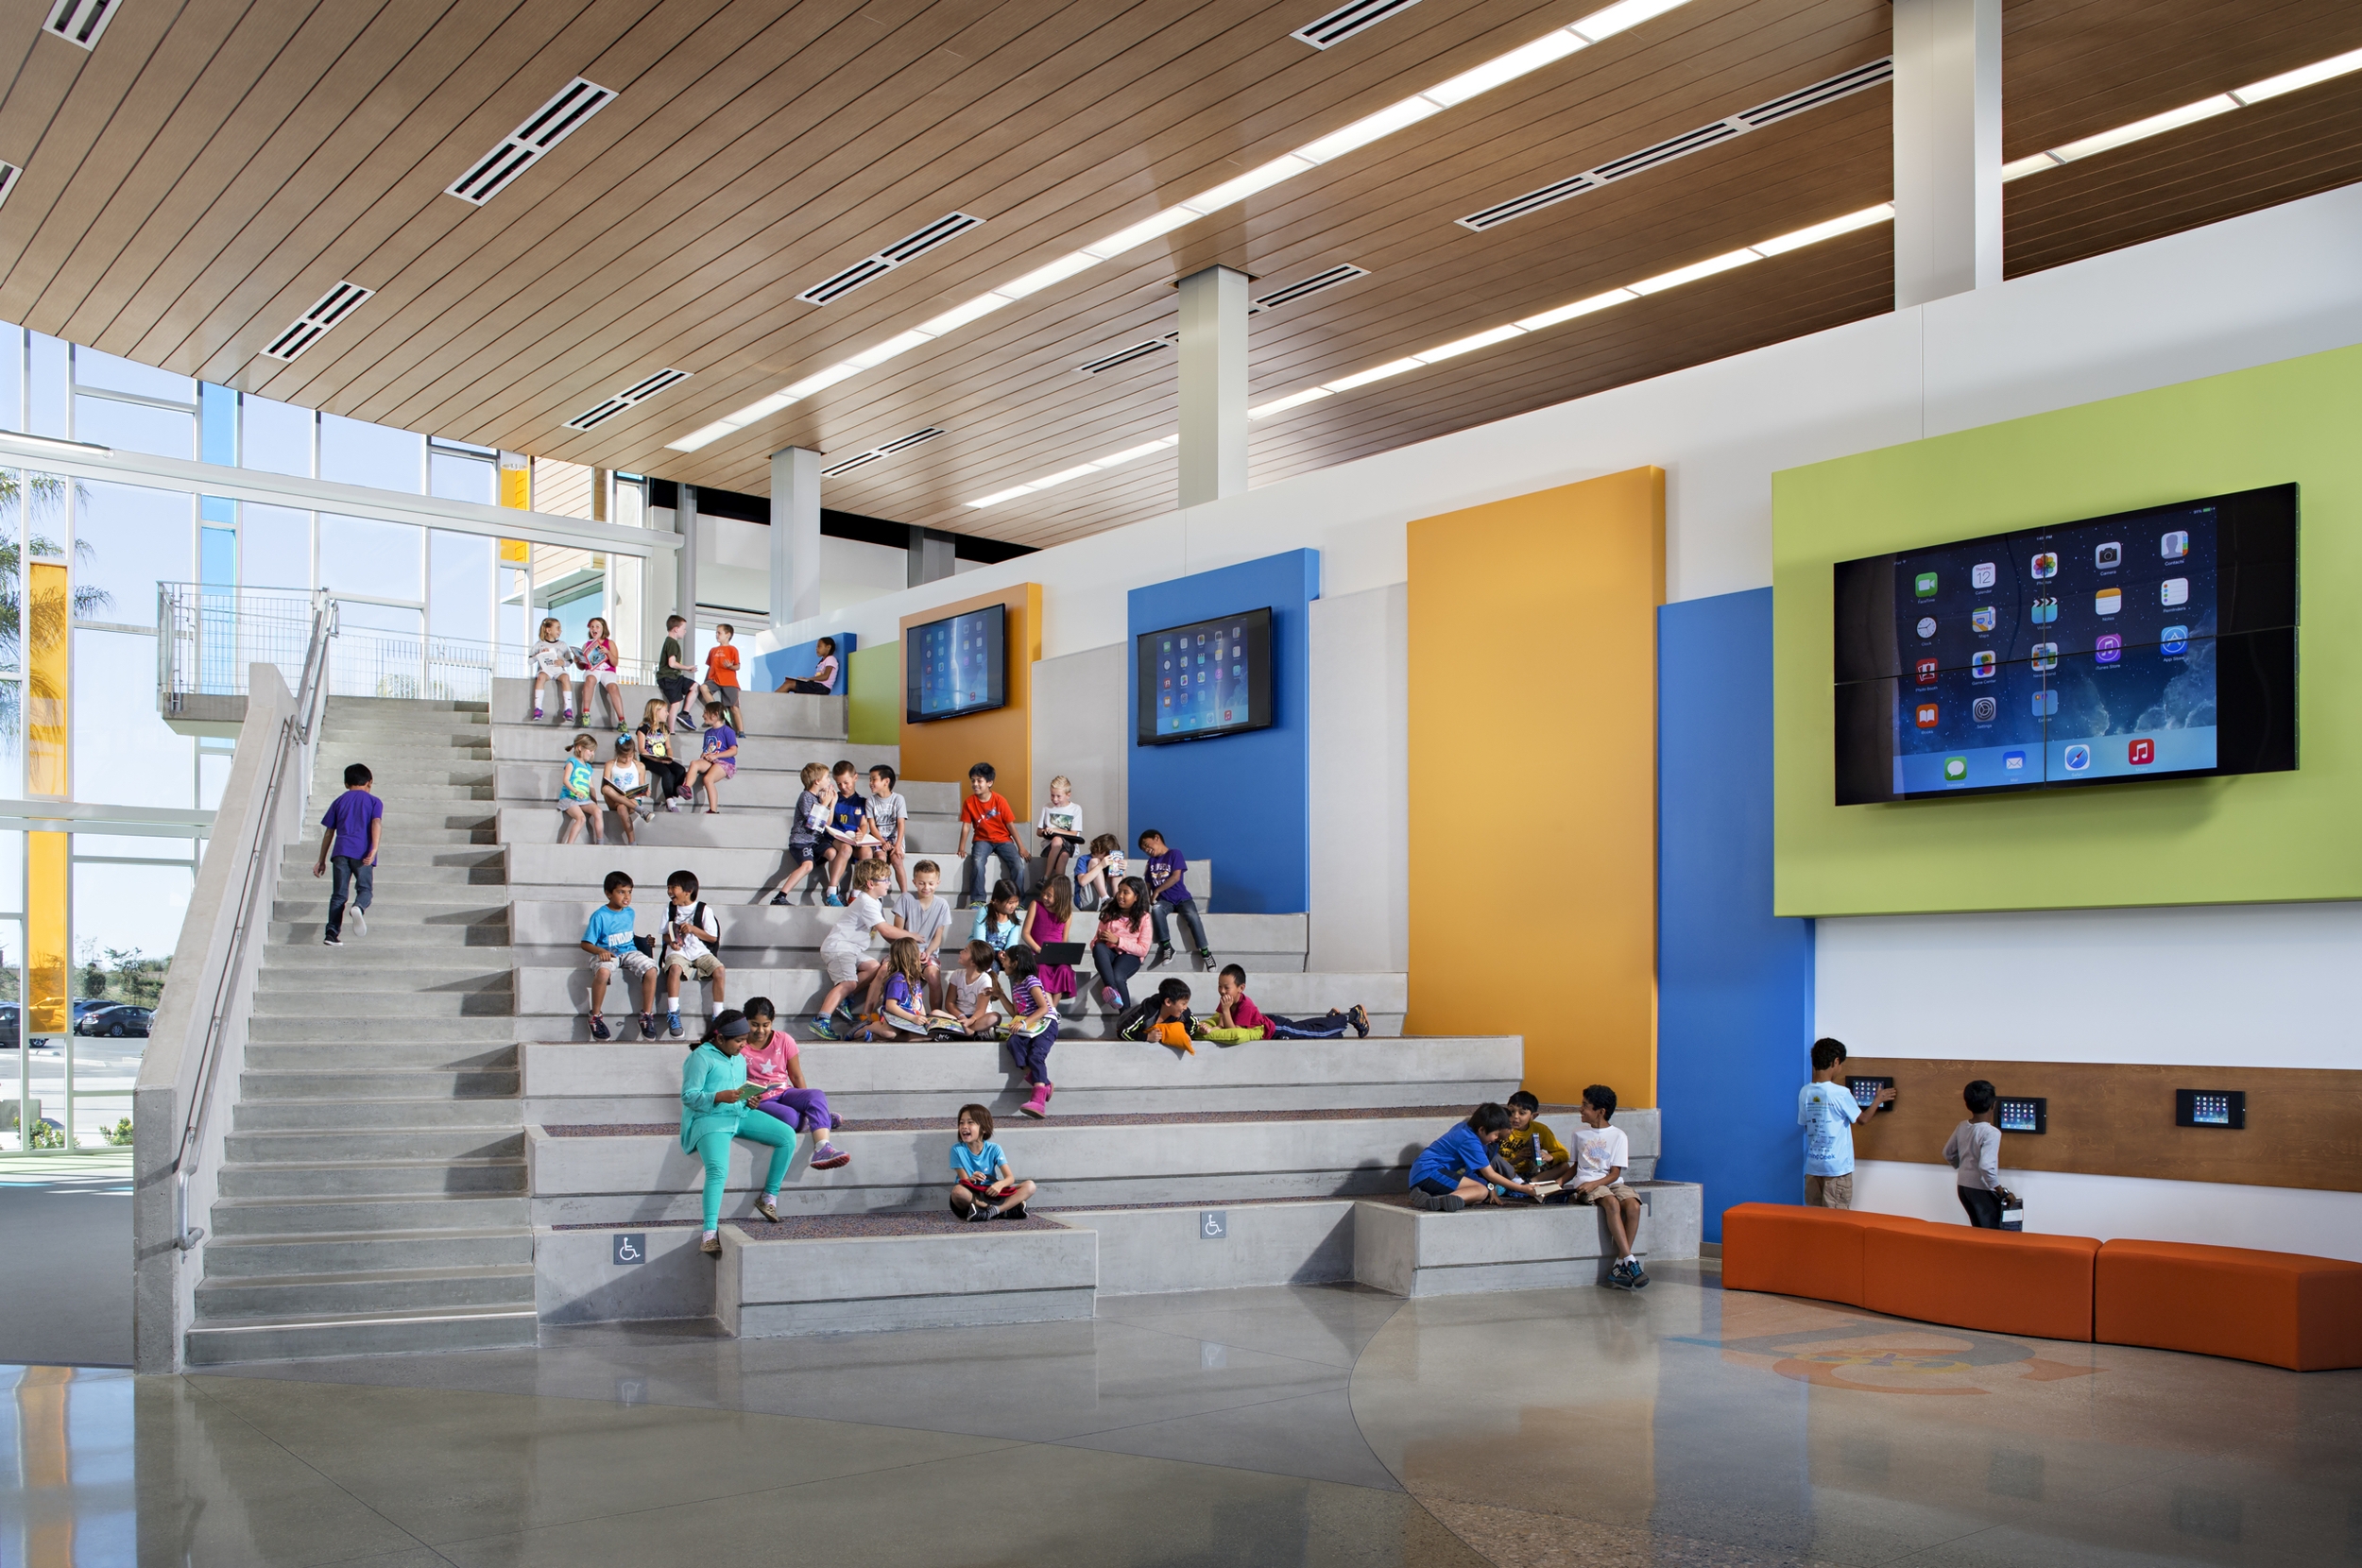 Нова школа. Design 39 Campus, Повэй (Poway), Калифорния, США, год постройки – 2014. Современная школа. Современная школа внутри. Красивая школа внутри.